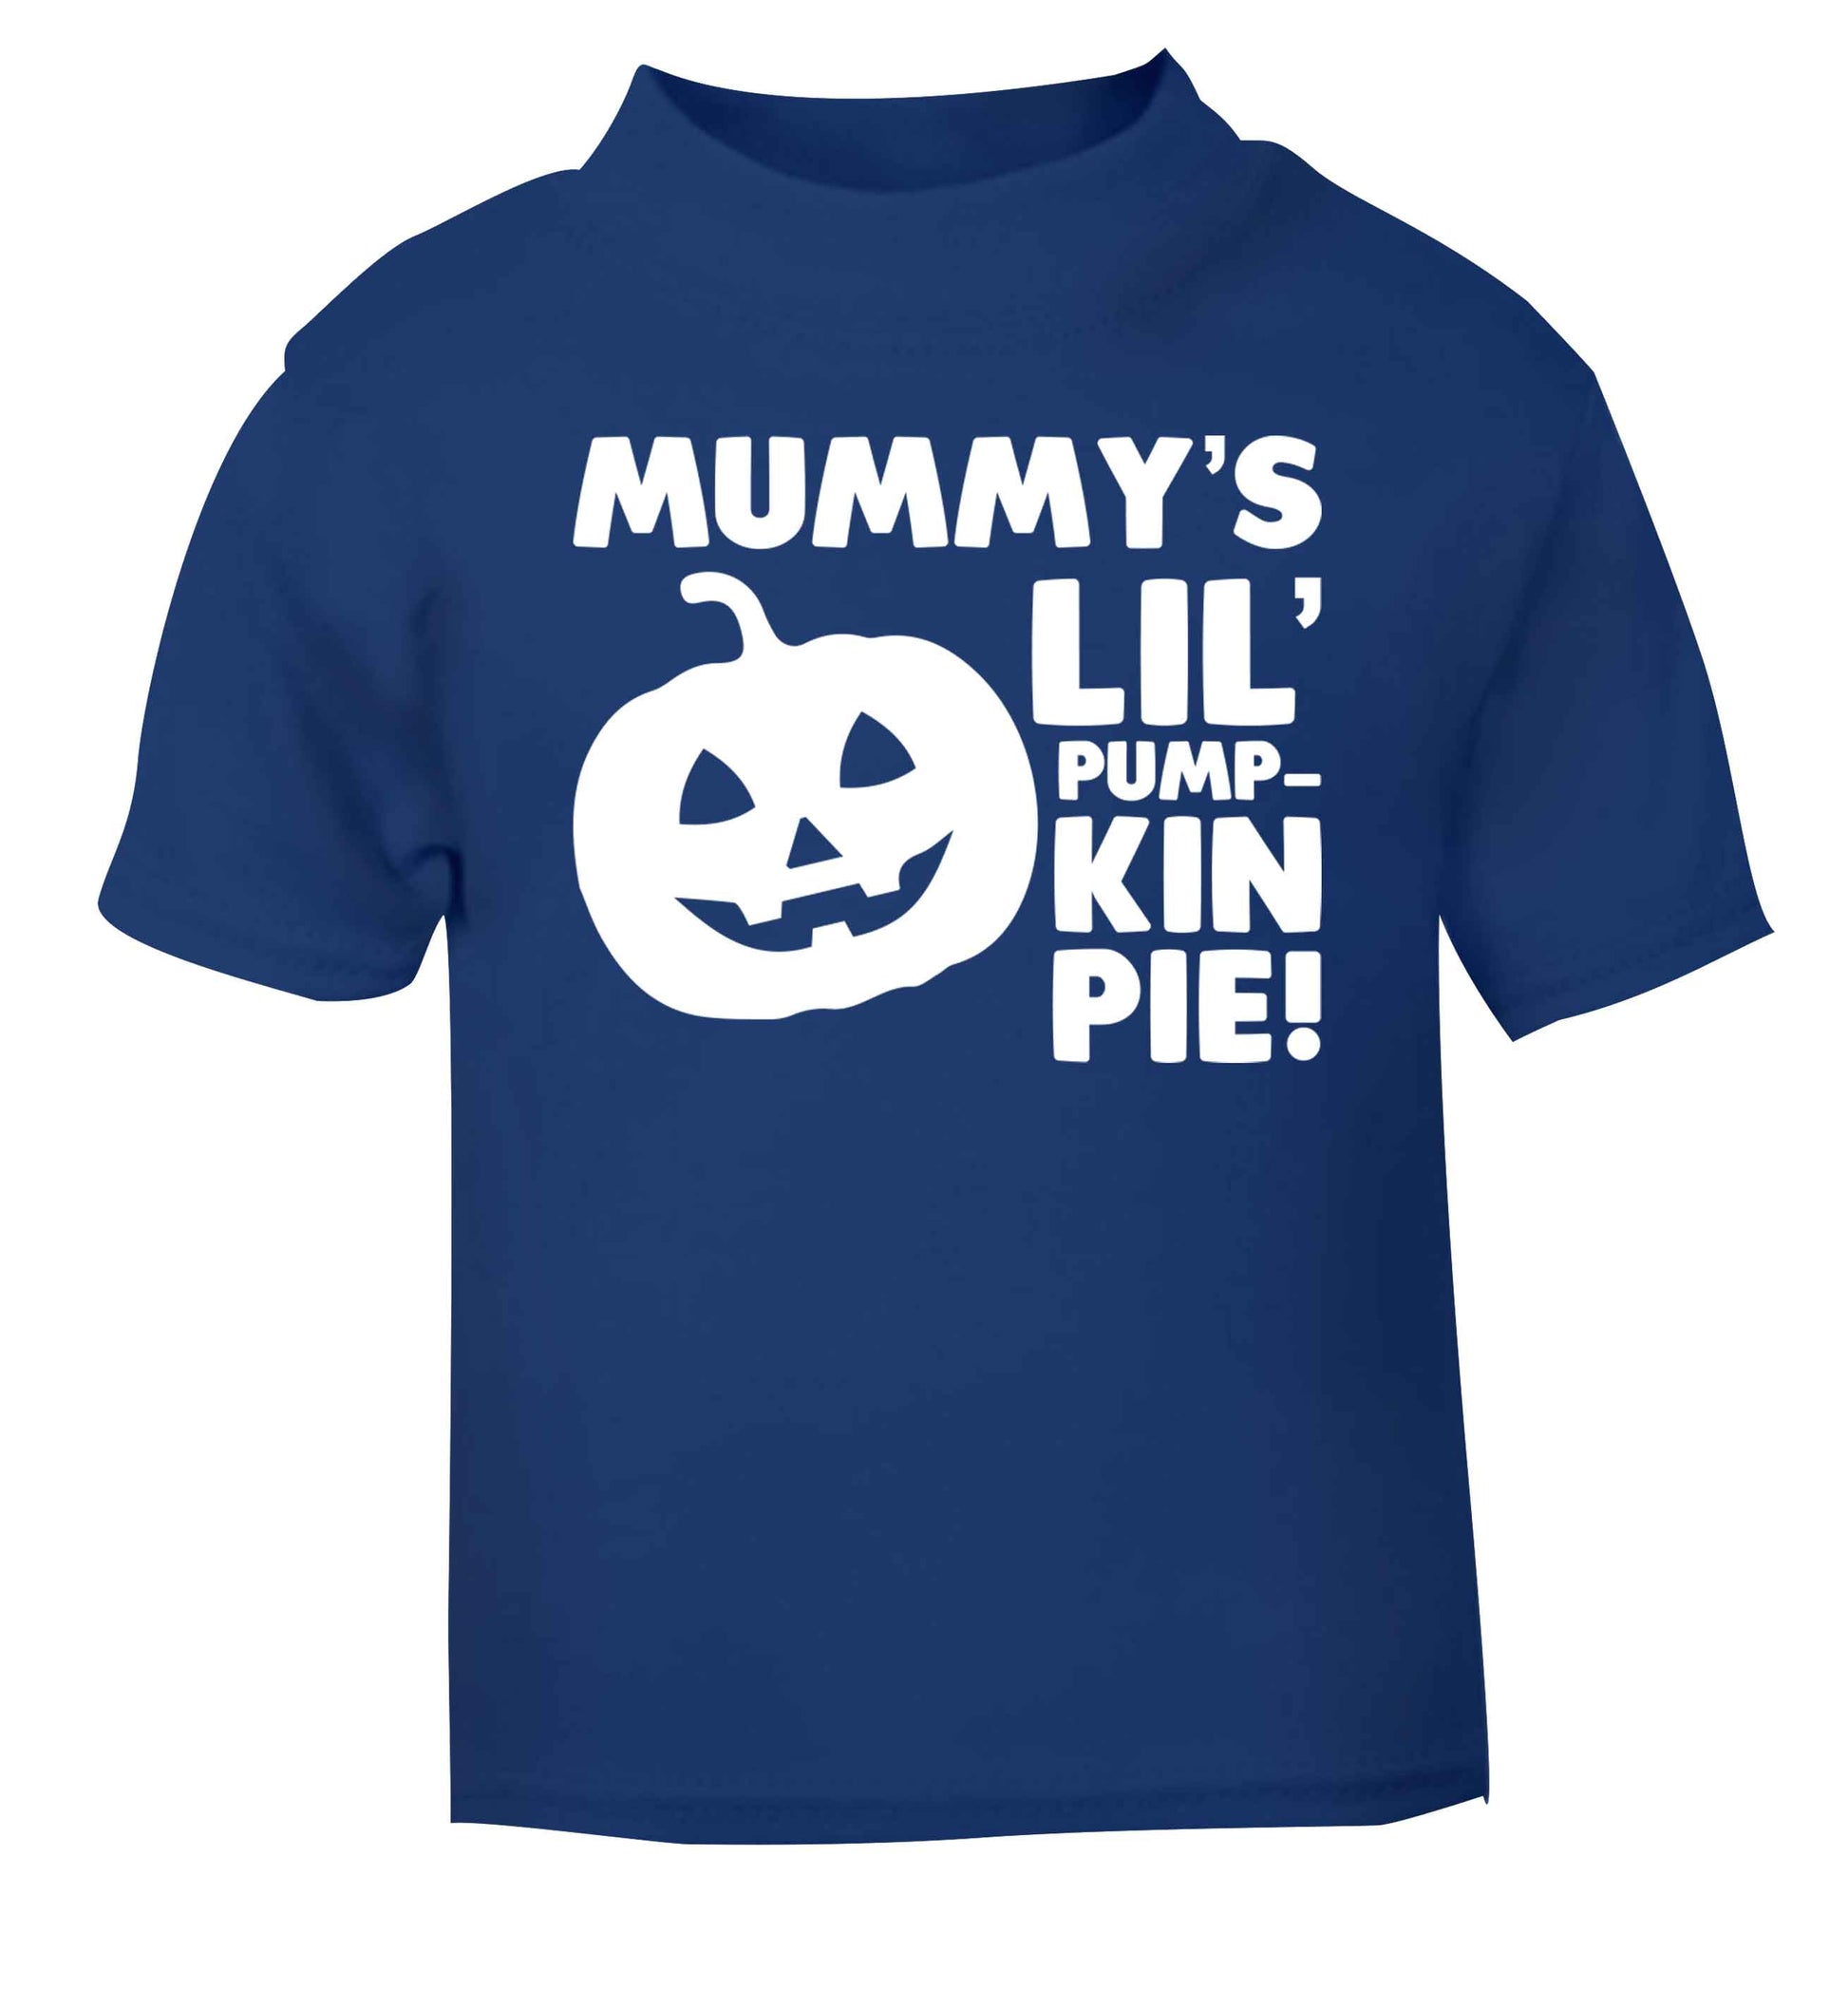 Mummy's lil' pumpkin pie blue baby toddler Tshirt 2 Years